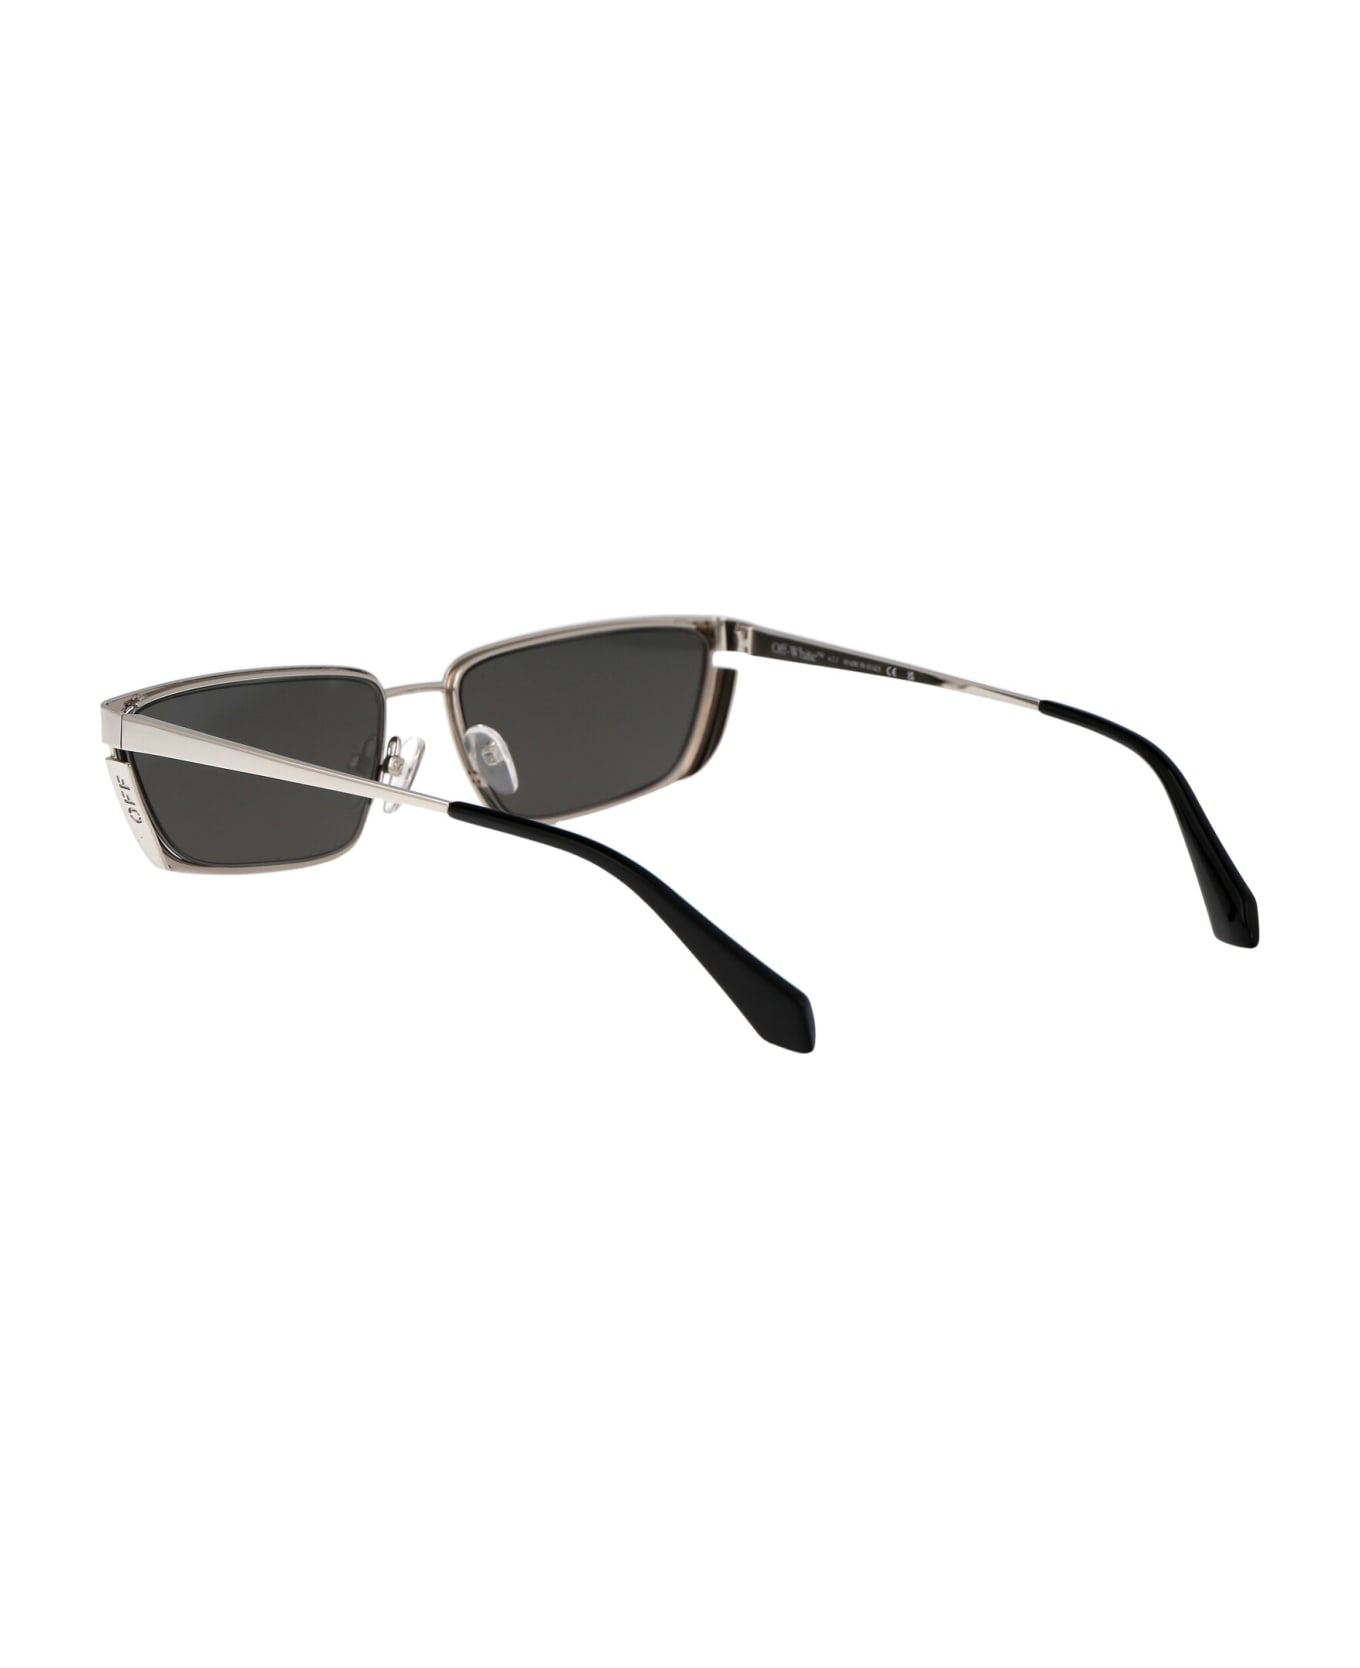 Off-White Richfield Sunglasses - 7272 SILVER SILVER